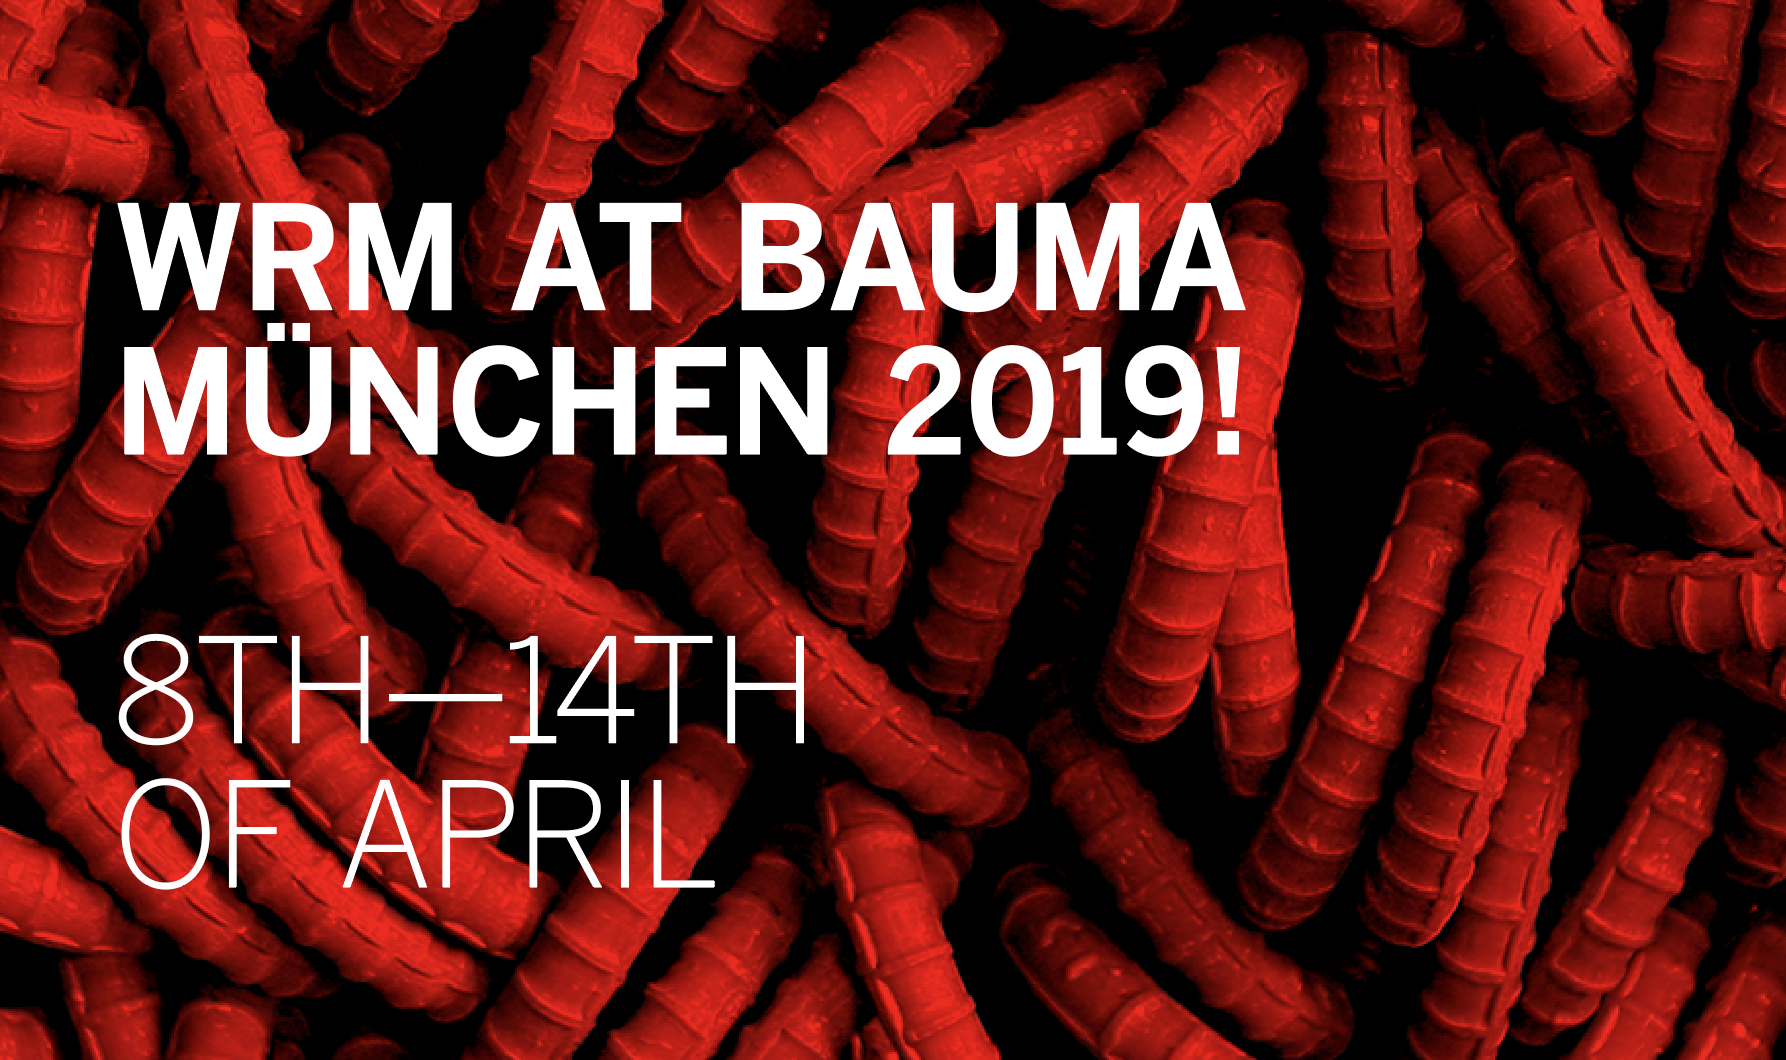 WRM at BAUMA München 2019!